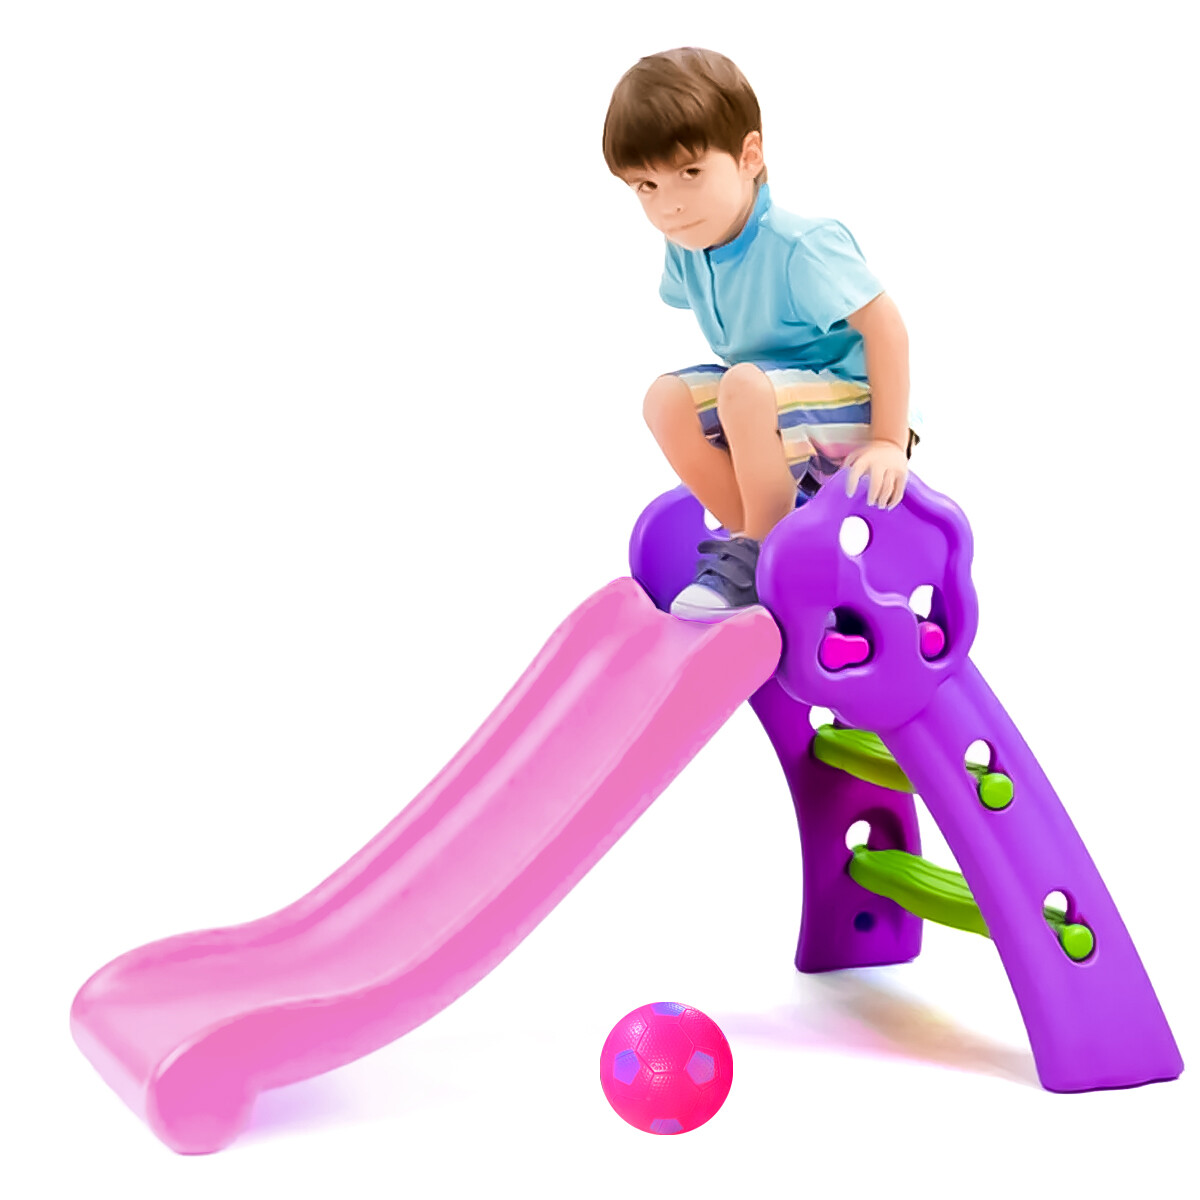 Tobogán Infantil Plástico Mediano P/niño + Aro Basket - Violeta con rosado 